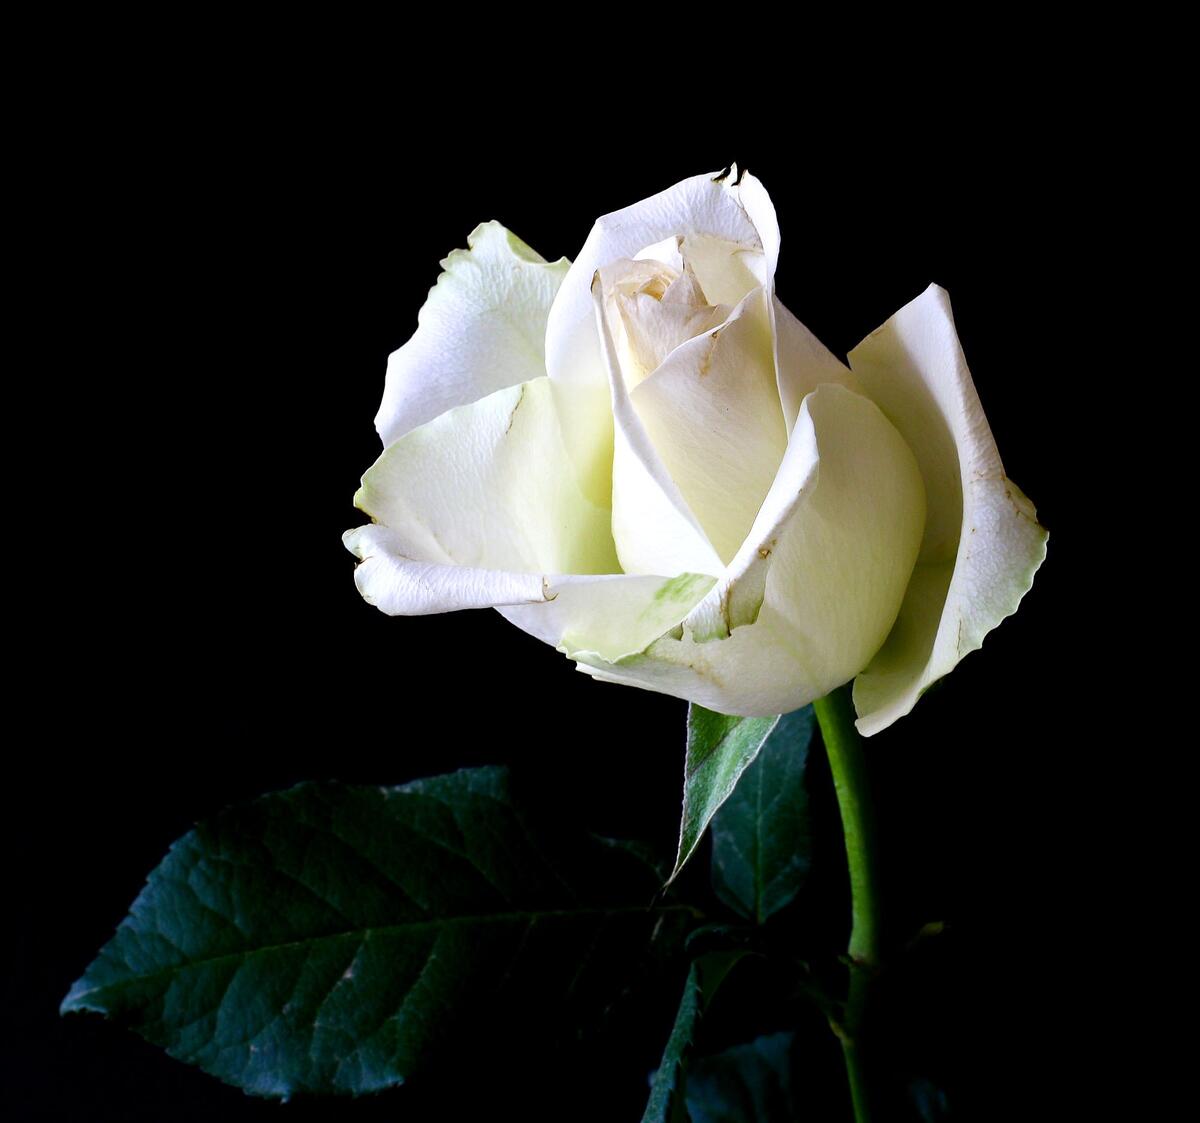 White rosebud